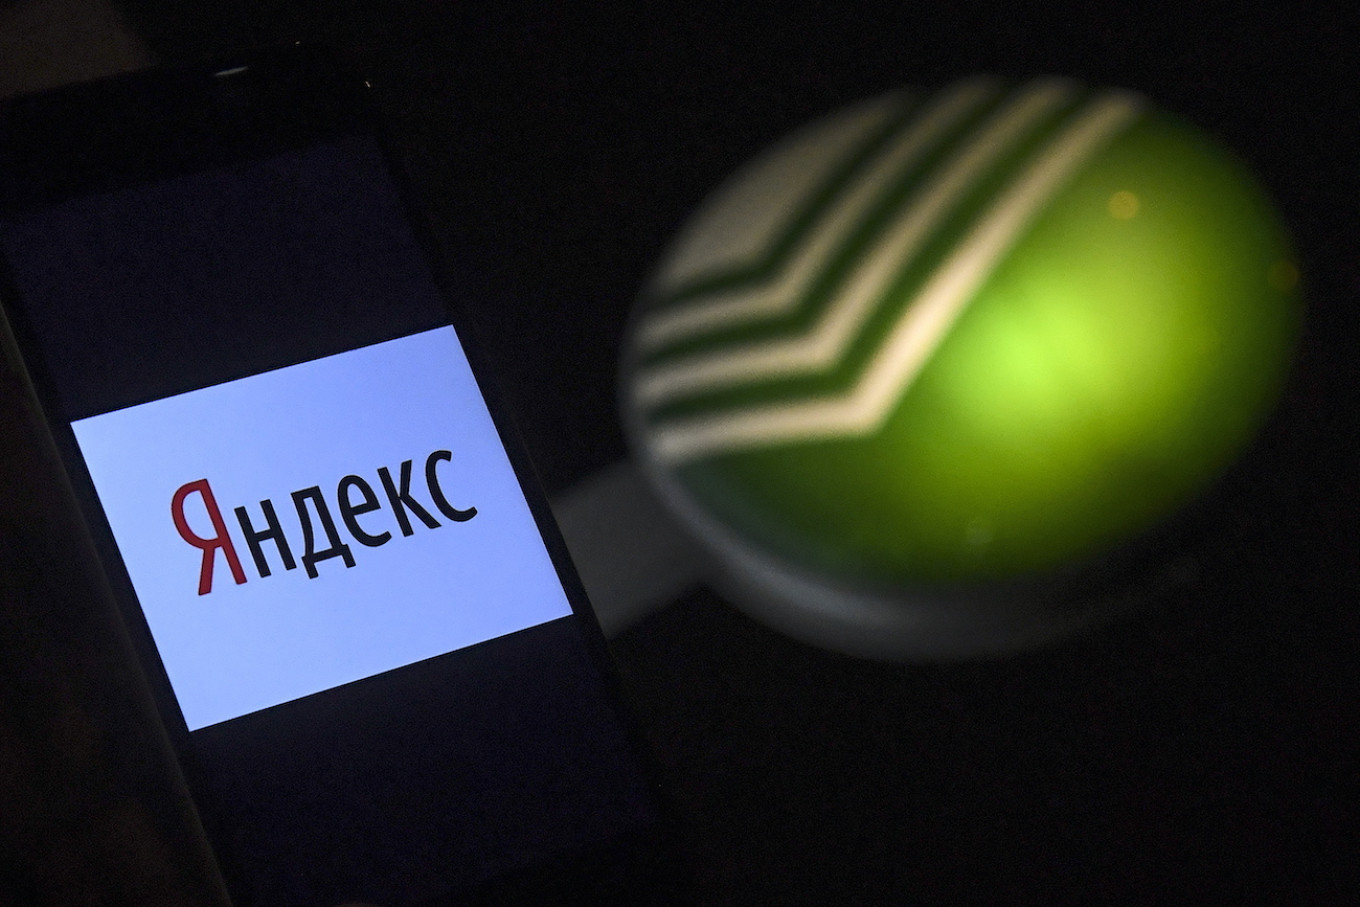 Yandex vs. Sberbank: Battle of the Russian Tech and Finance Giants Begins